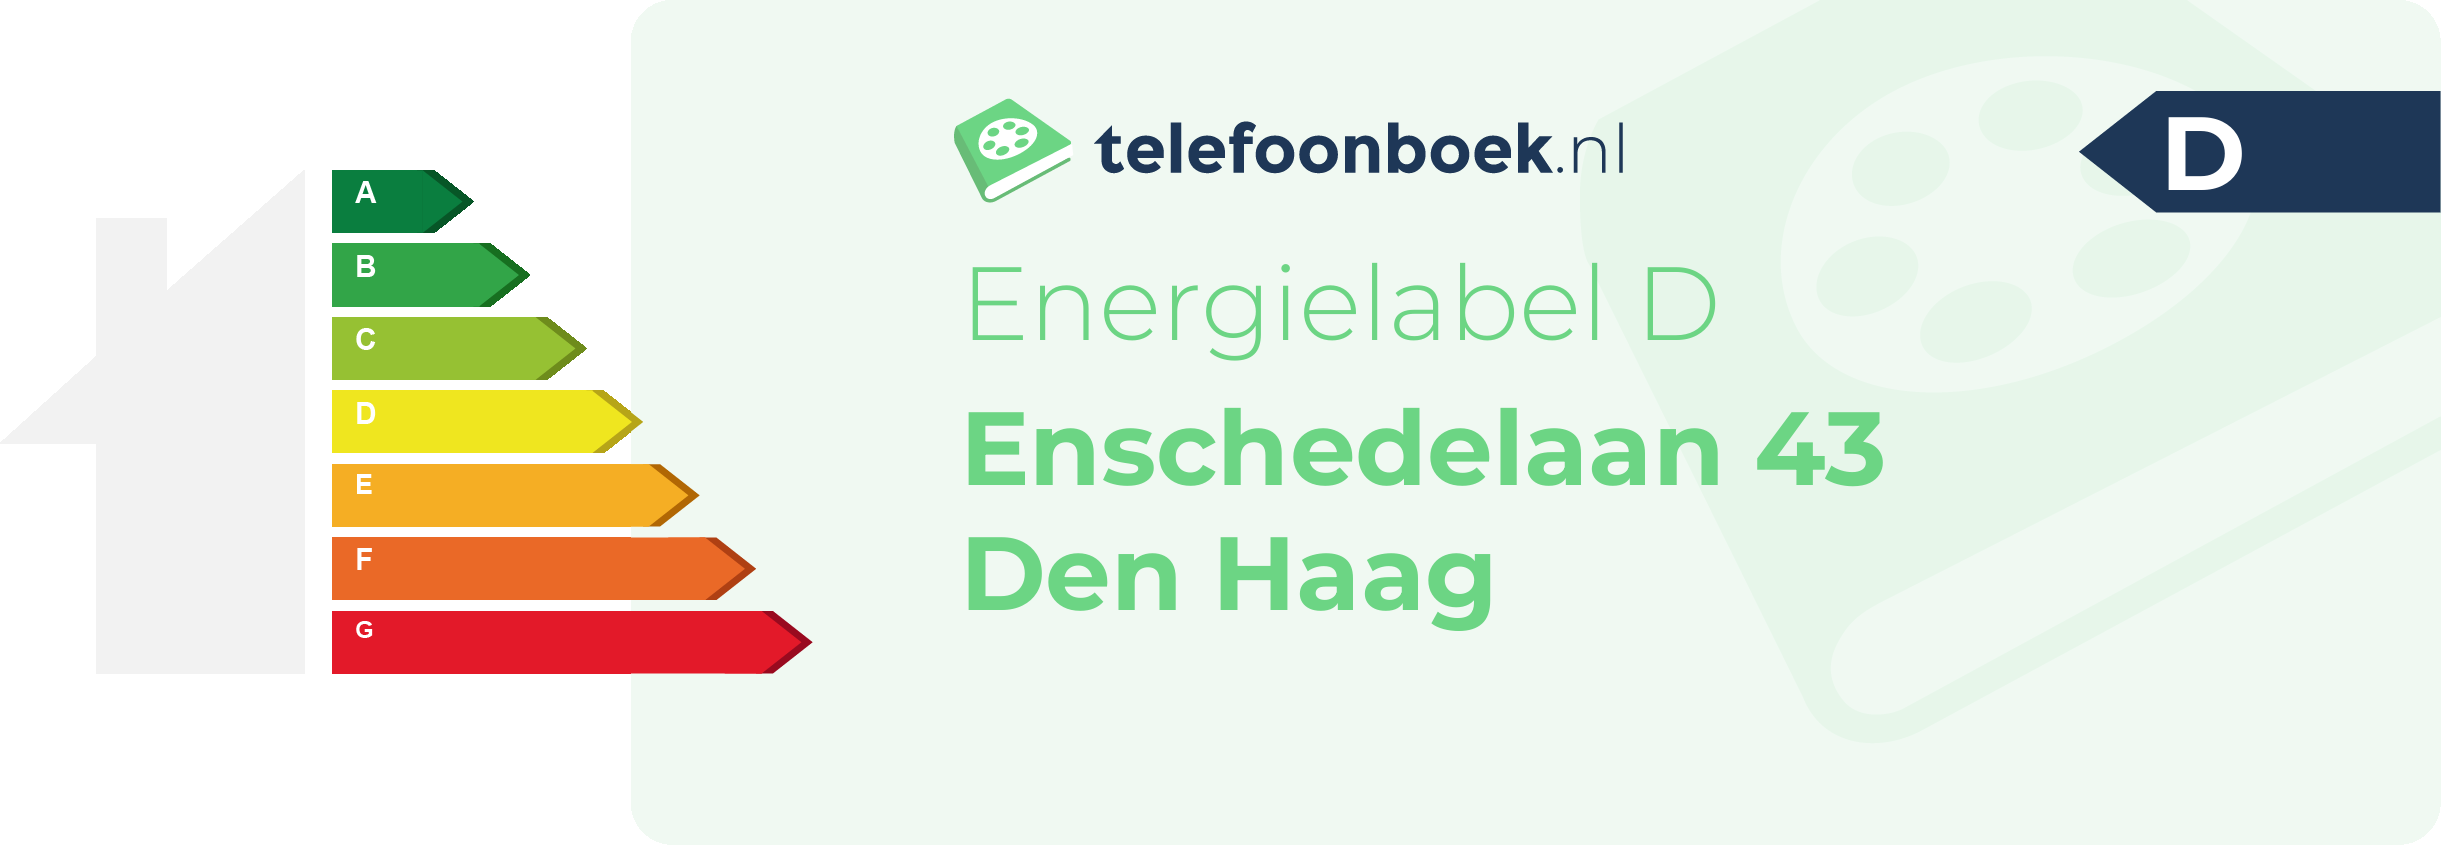 Energielabel Enschedelaan 43 Den Haag